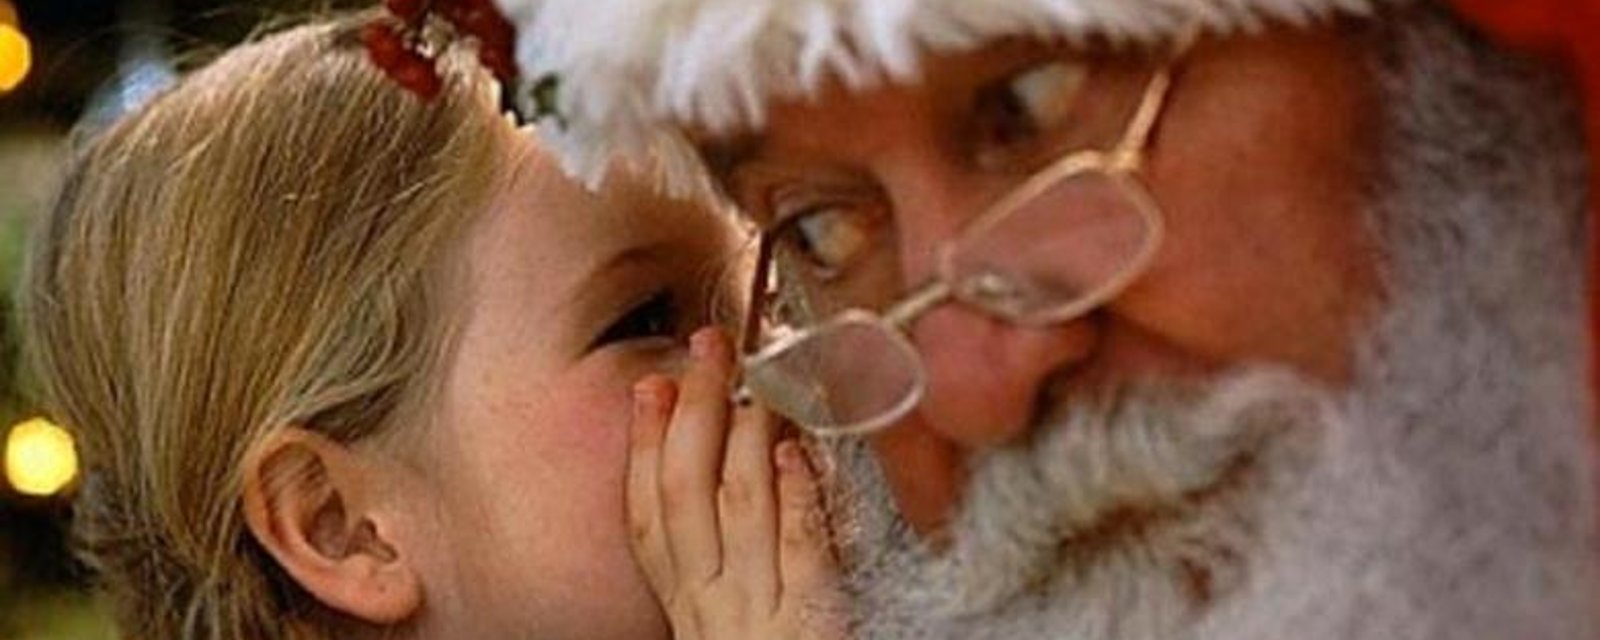 Comment expliquer à votre enfant que le Père Noël n'existe pas, sans gâcher la magie de Noël! 